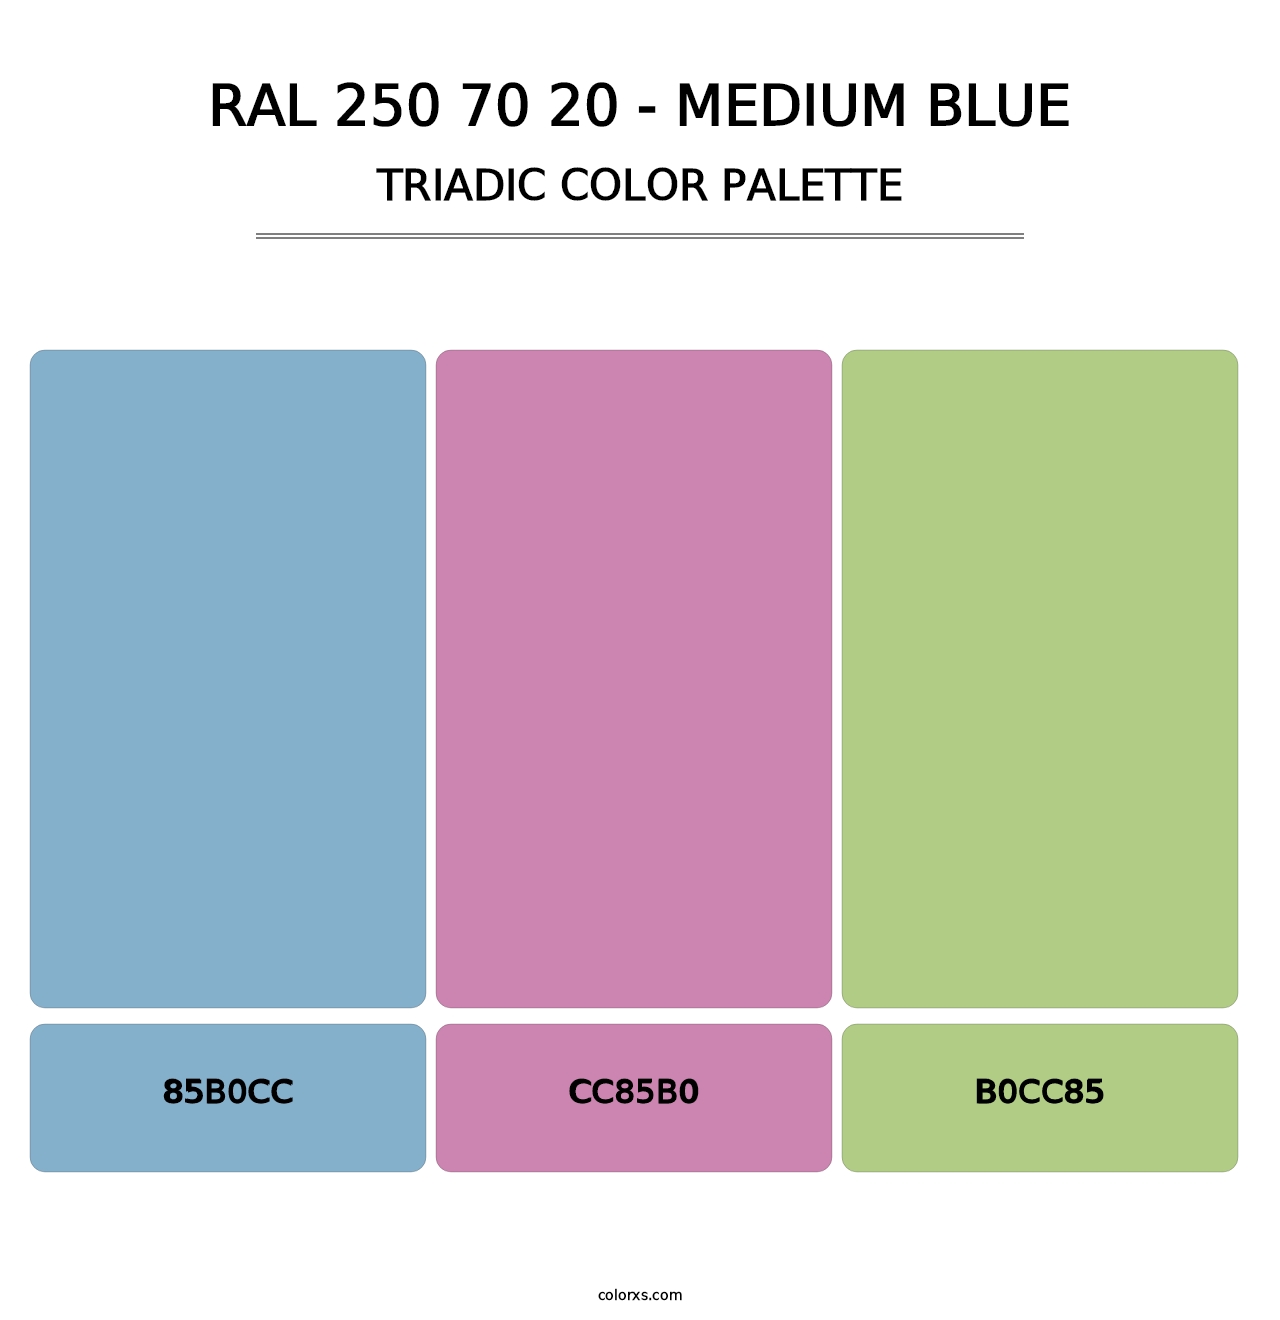 RAL 250 70 20 - Medium Blue - Triadic Color Palette